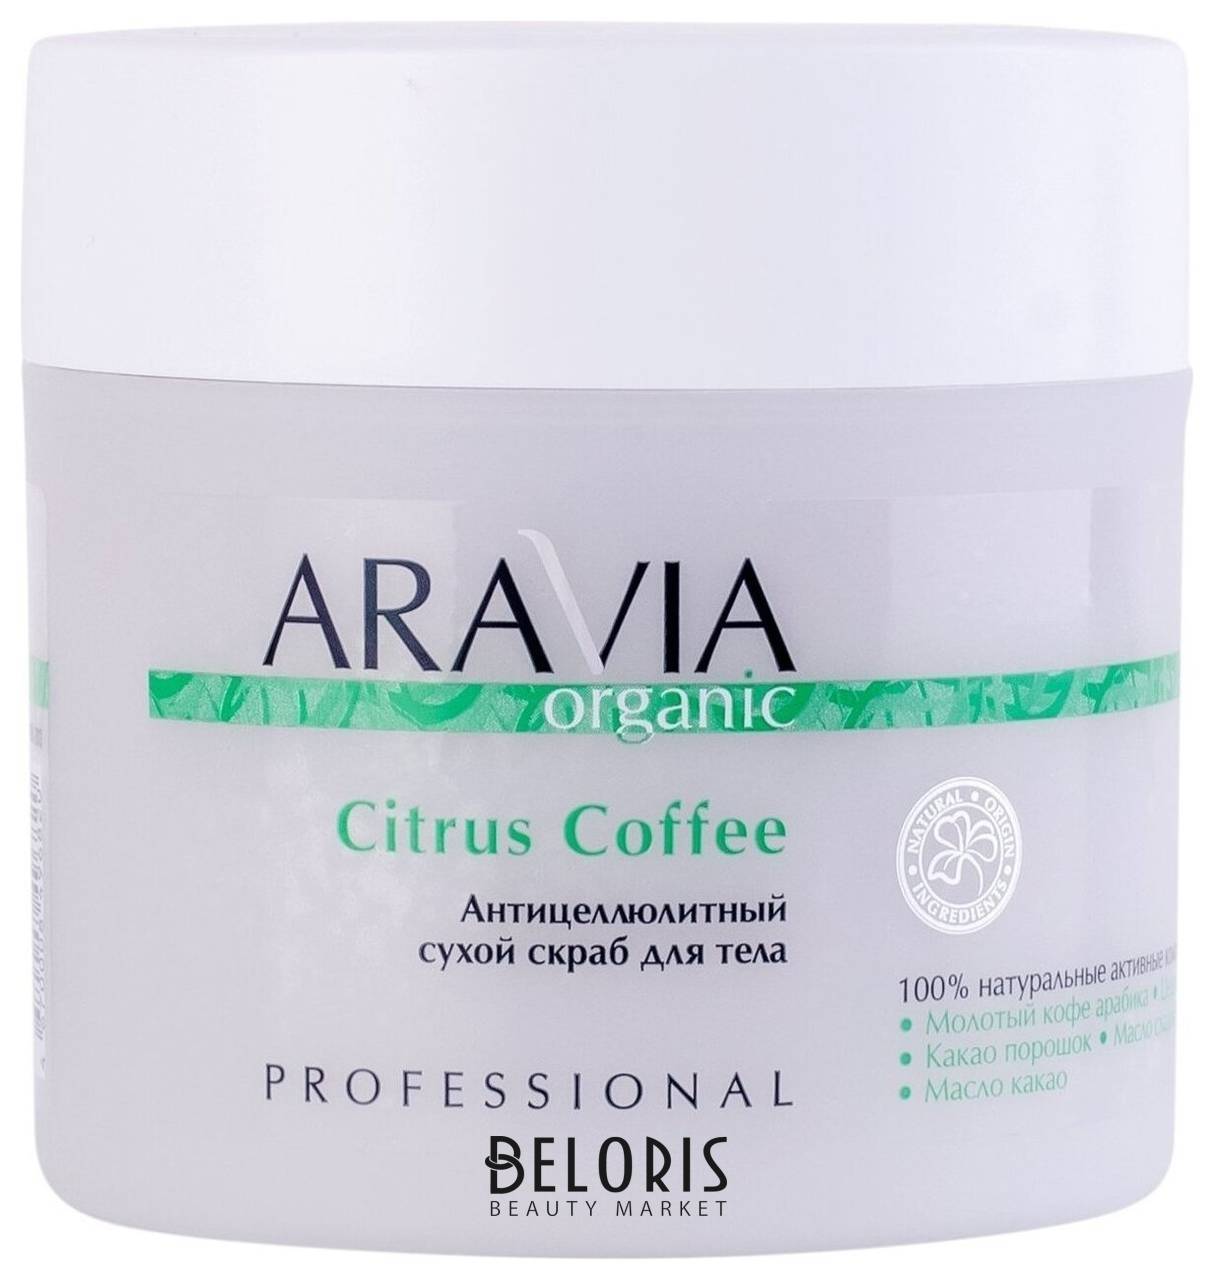 Антицеллюлитный сухой скраб для тела Citrus Coffee Aravia Professional Aravia Organic